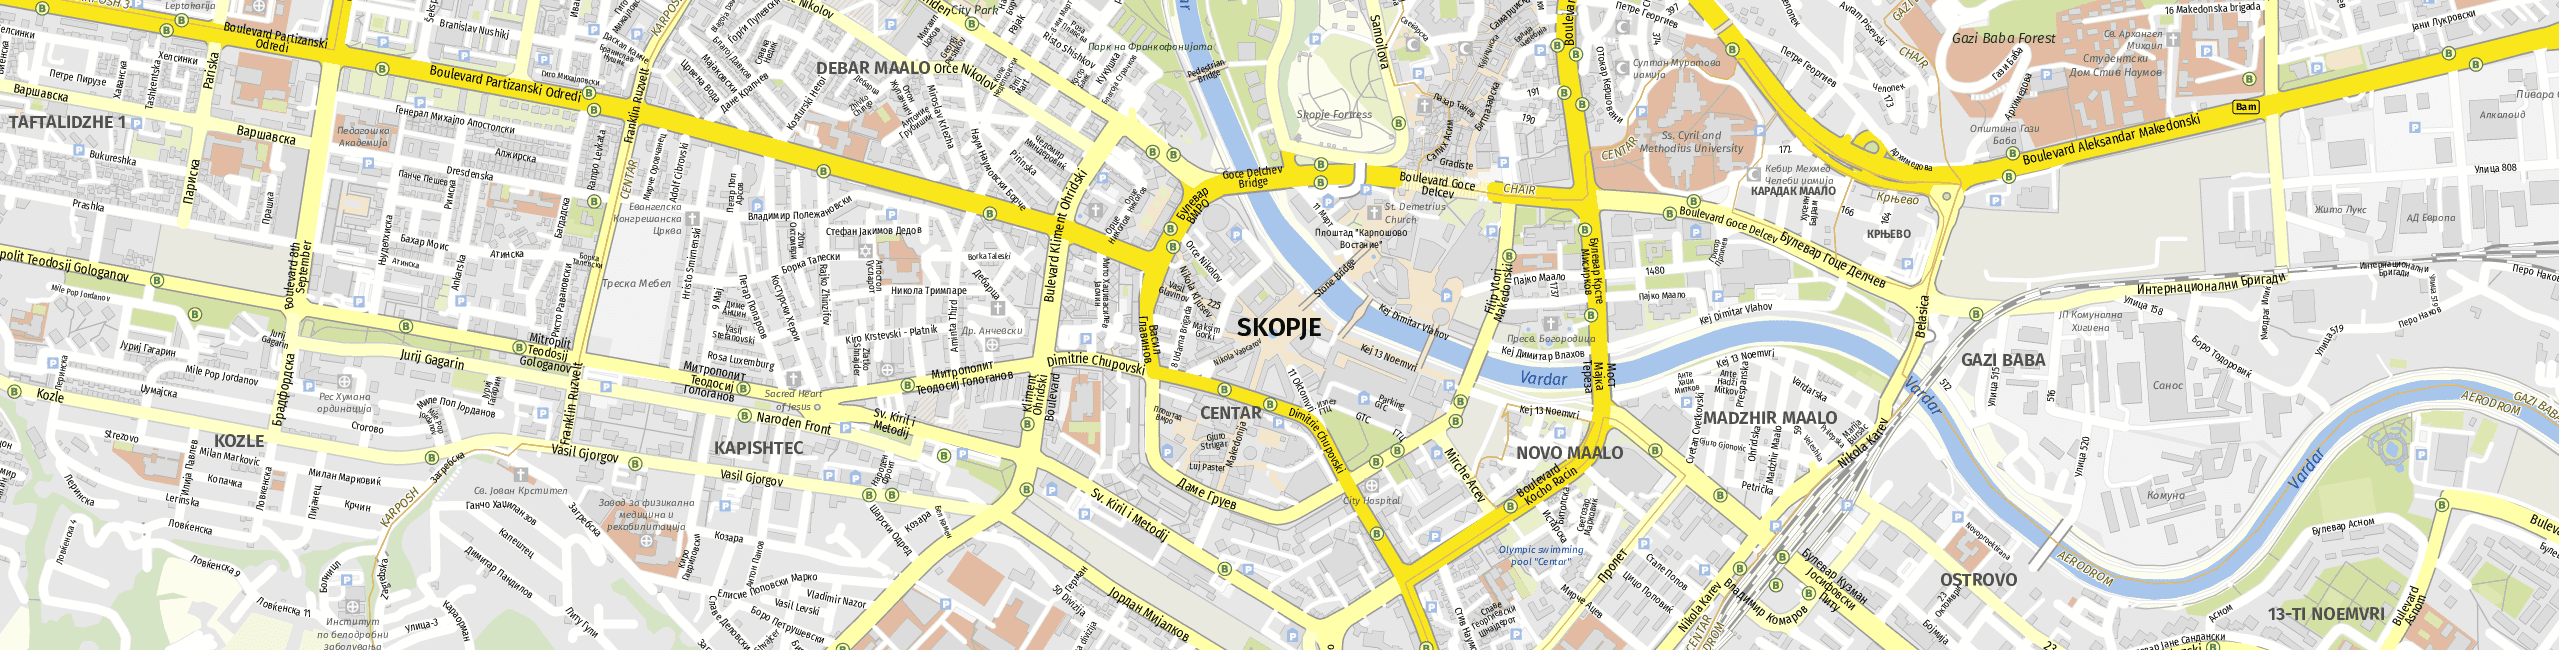 Stadtplan Skopje zum Downloaden.